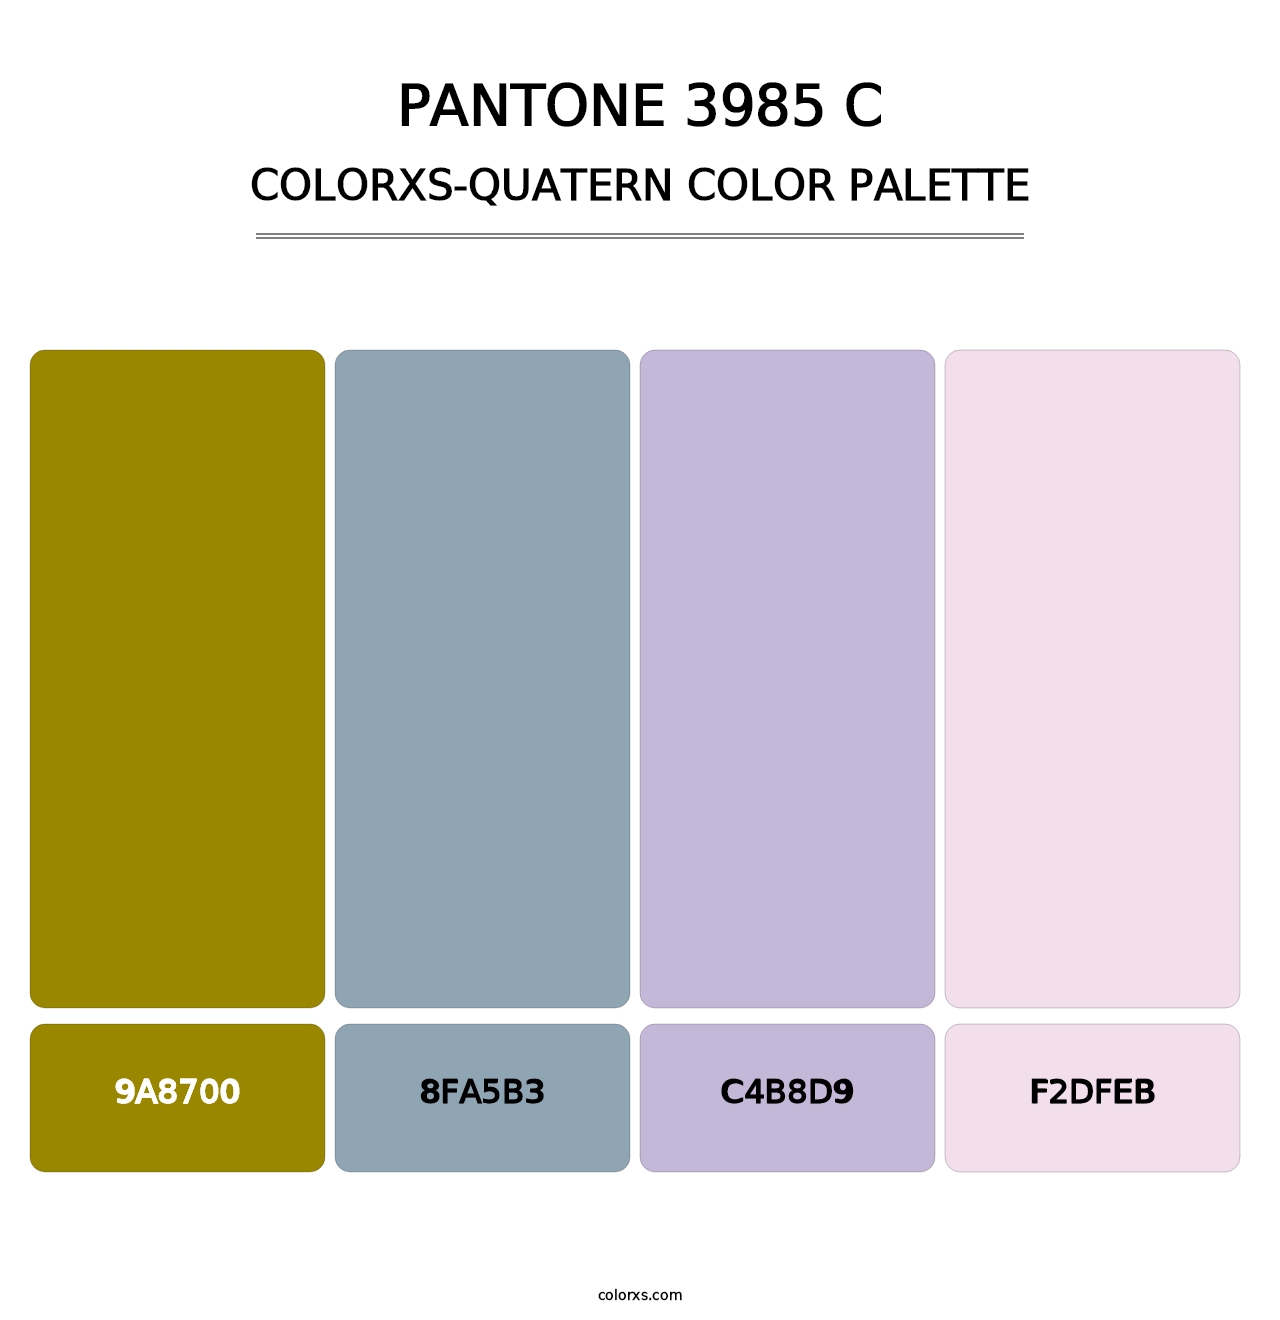 PANTONE 3985 C - Colorxs Quatern Palette